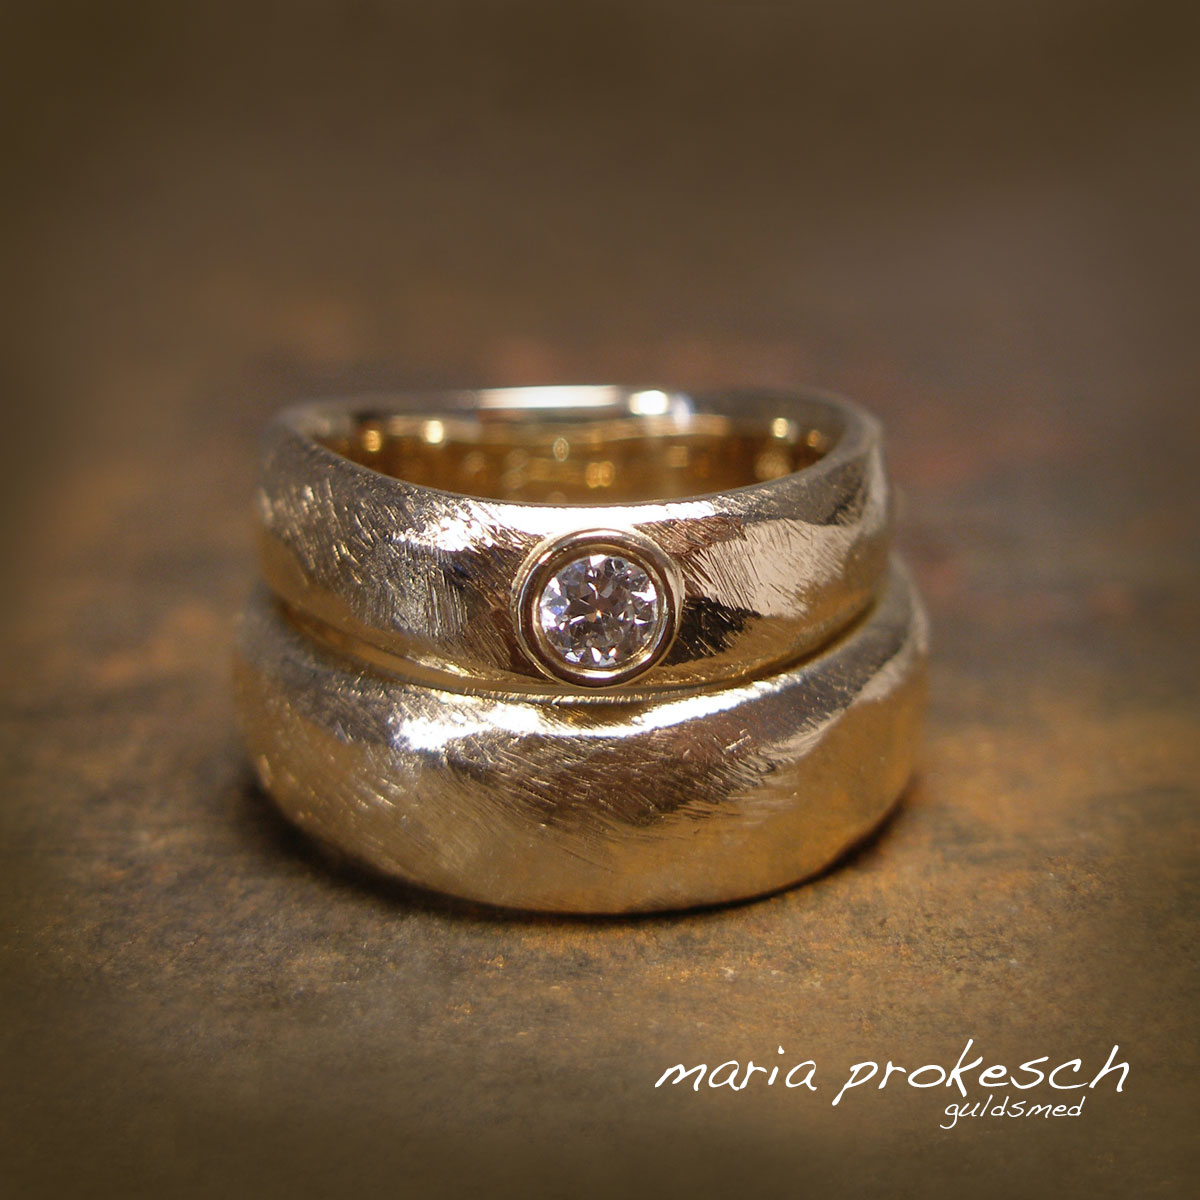 Grovfilede vielsesringe i ekset form, rustik 14 karat guld. Den ekset form gør at ringe sidder rigtigt godt på finger. Kvinde ring med sten, en stor hvid diamant (brillant) i fatning.